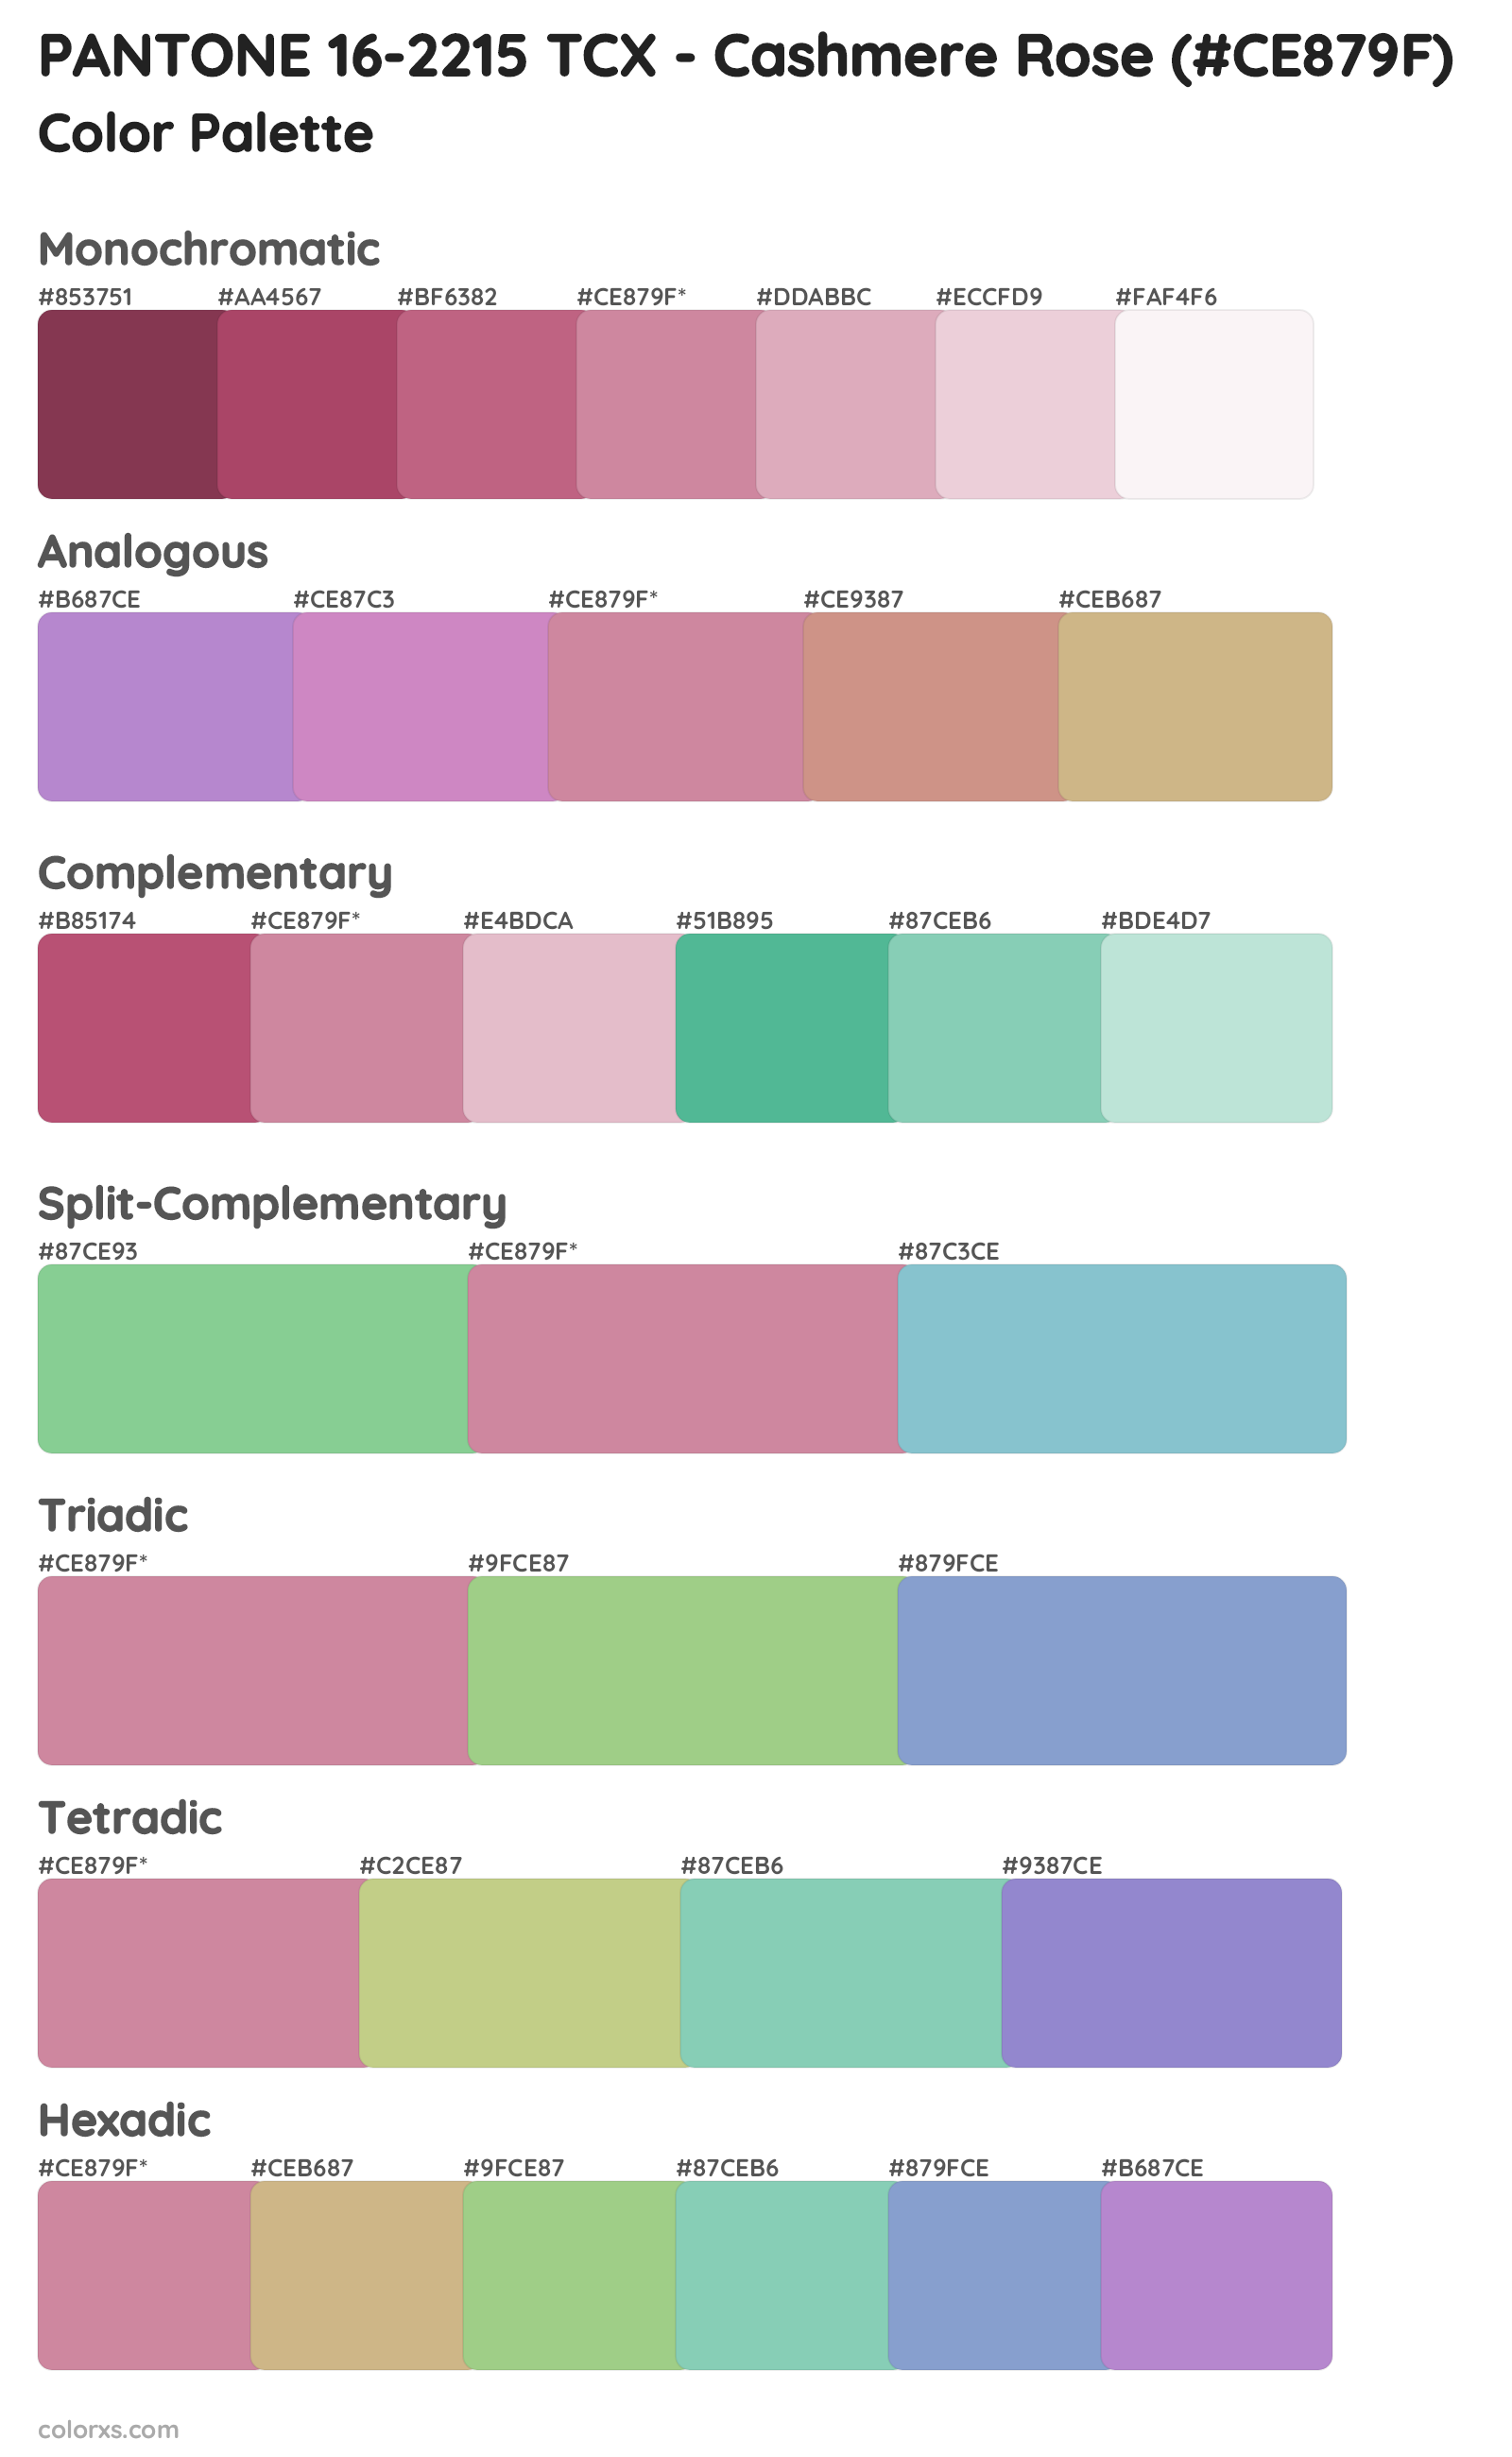 PANTONE 16-2215 TCX - Cashmere Rose Color Scheme Palettes